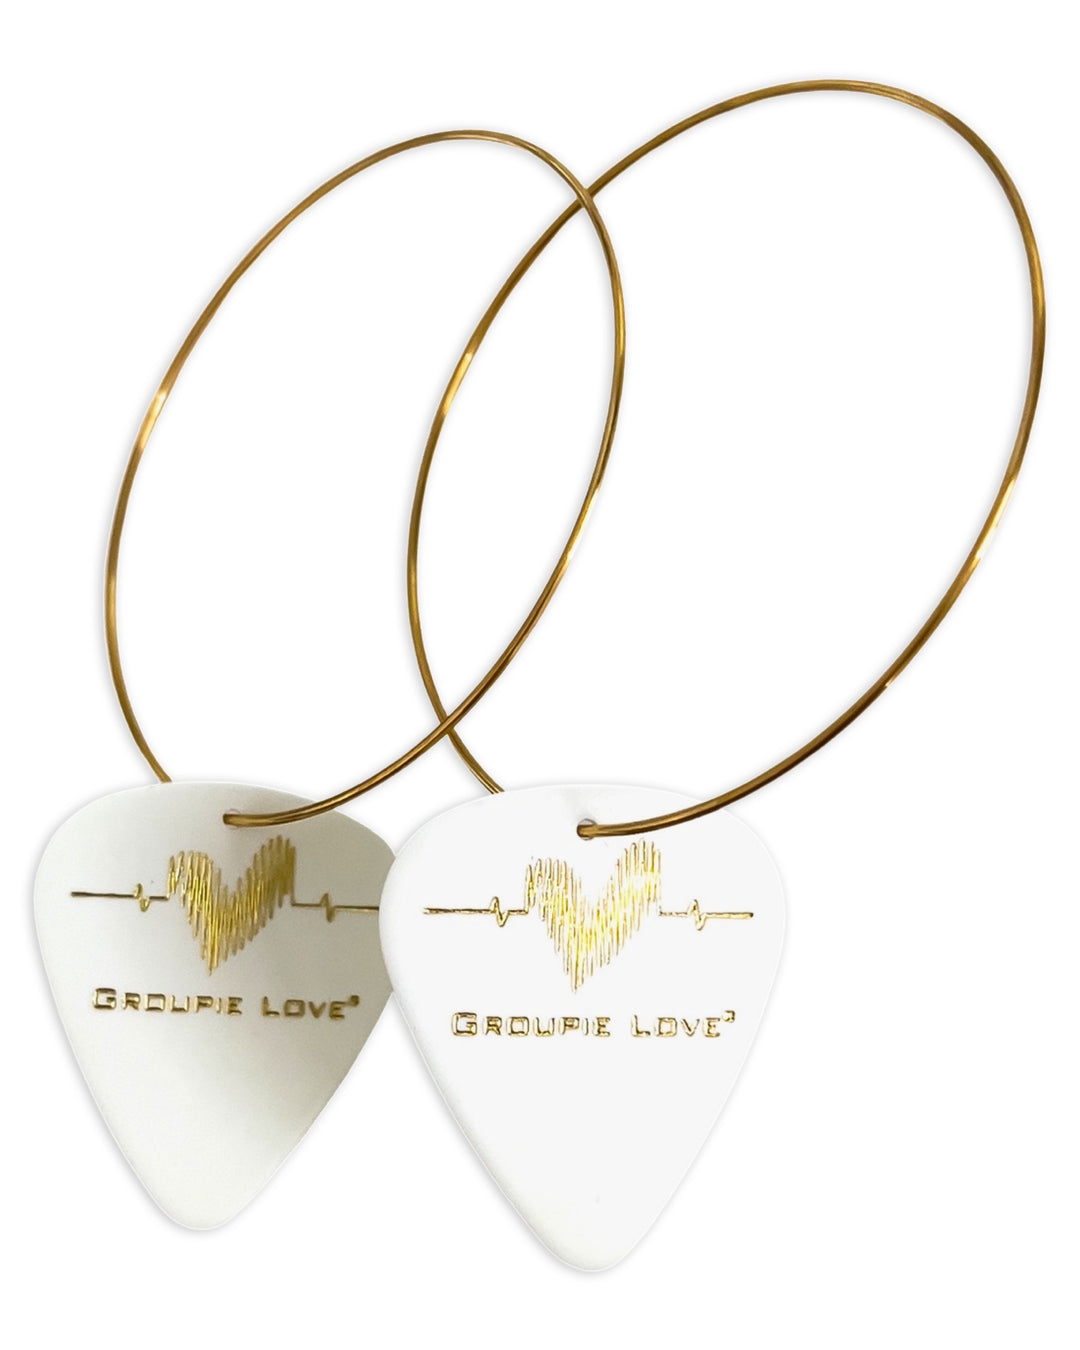 Groupie Love White Gold Single Guitar Pick Earrings